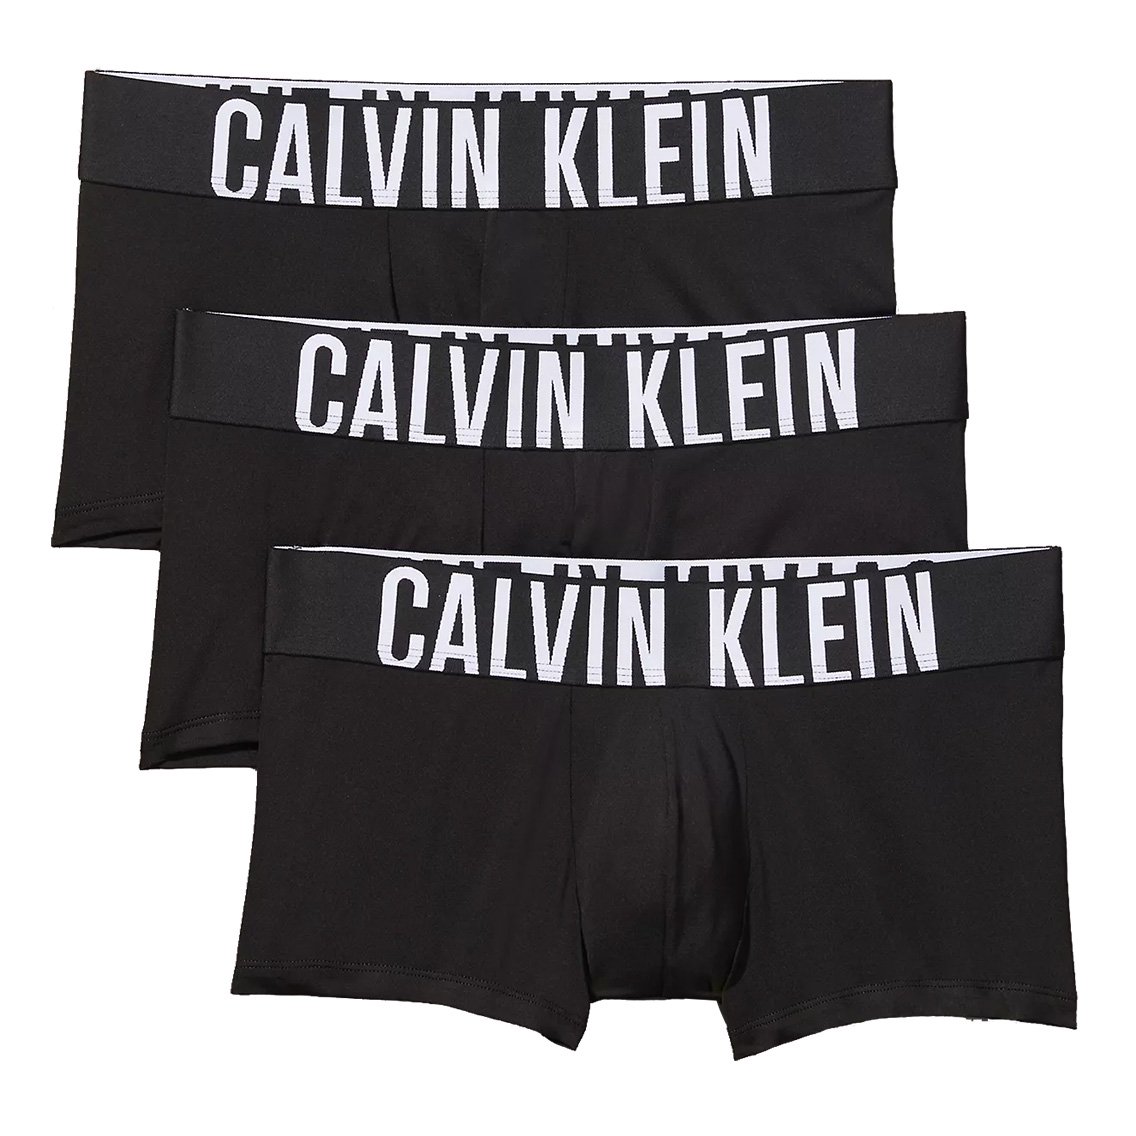 Calvin Klein(カルバンクライン)[NB2593-001]:ボクサーパンツ,男性下着 